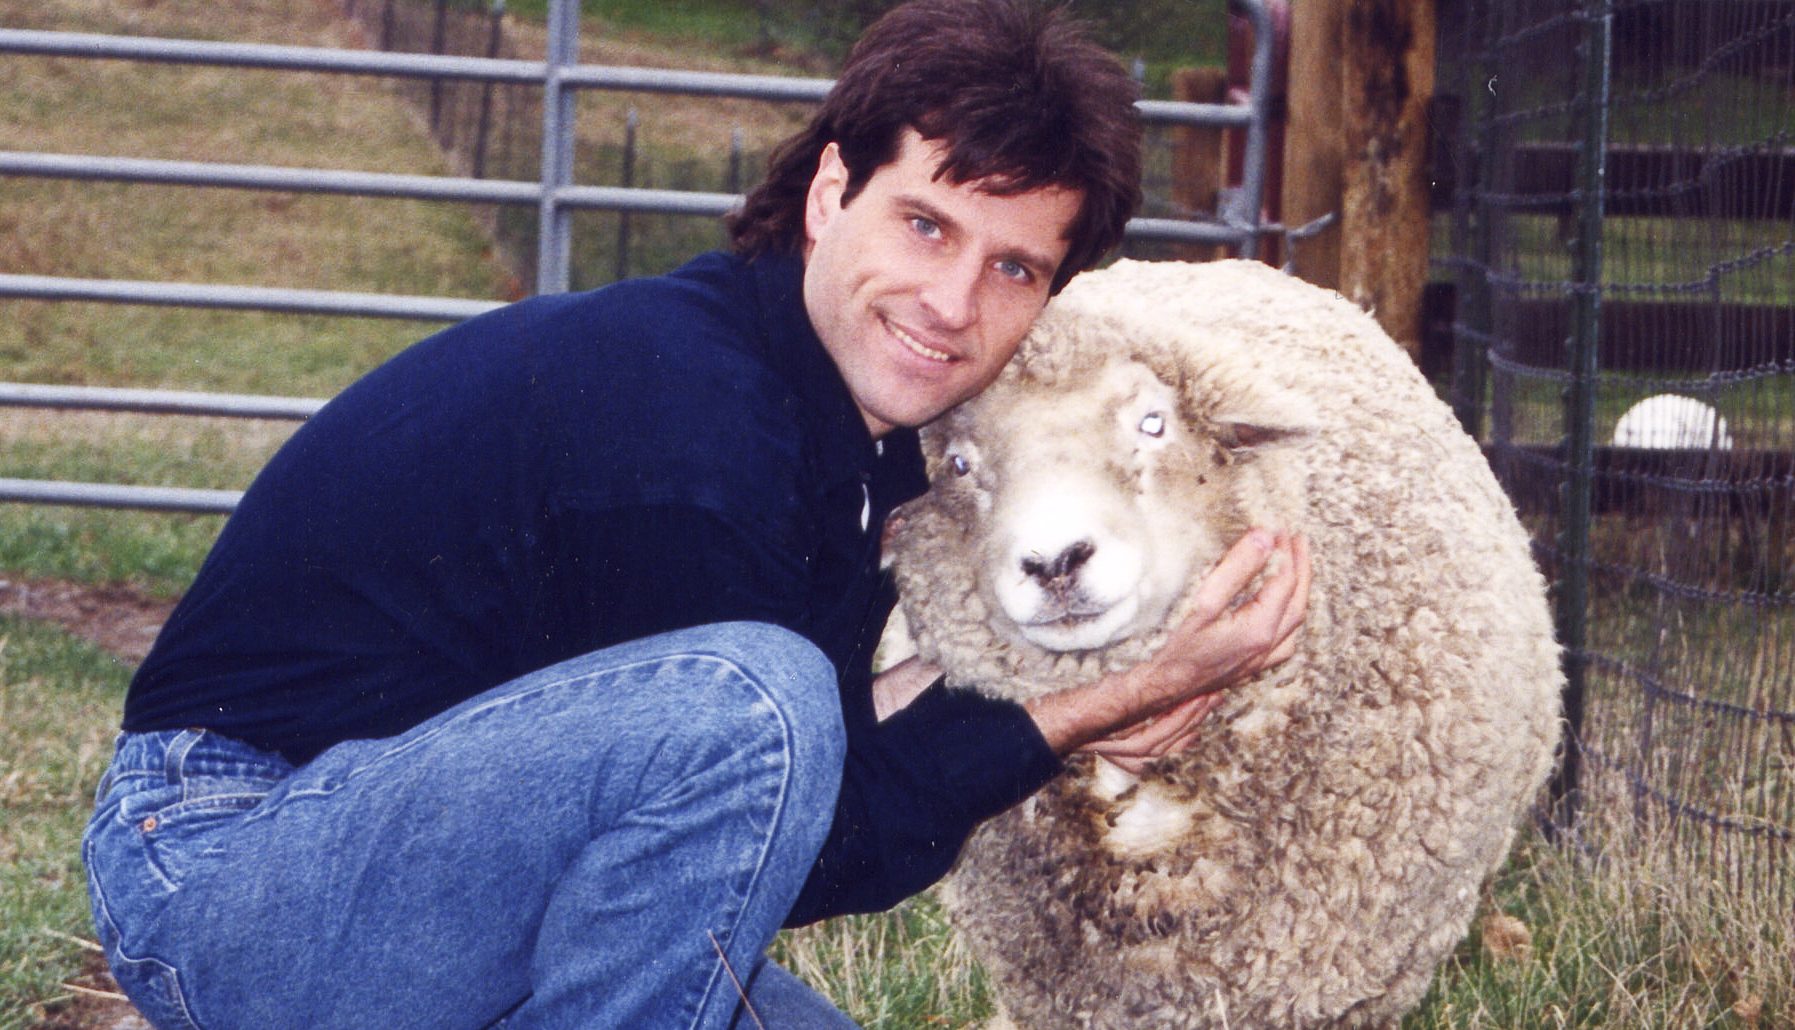 Gene Baur and Hilda sheep at Farm Sanctuary